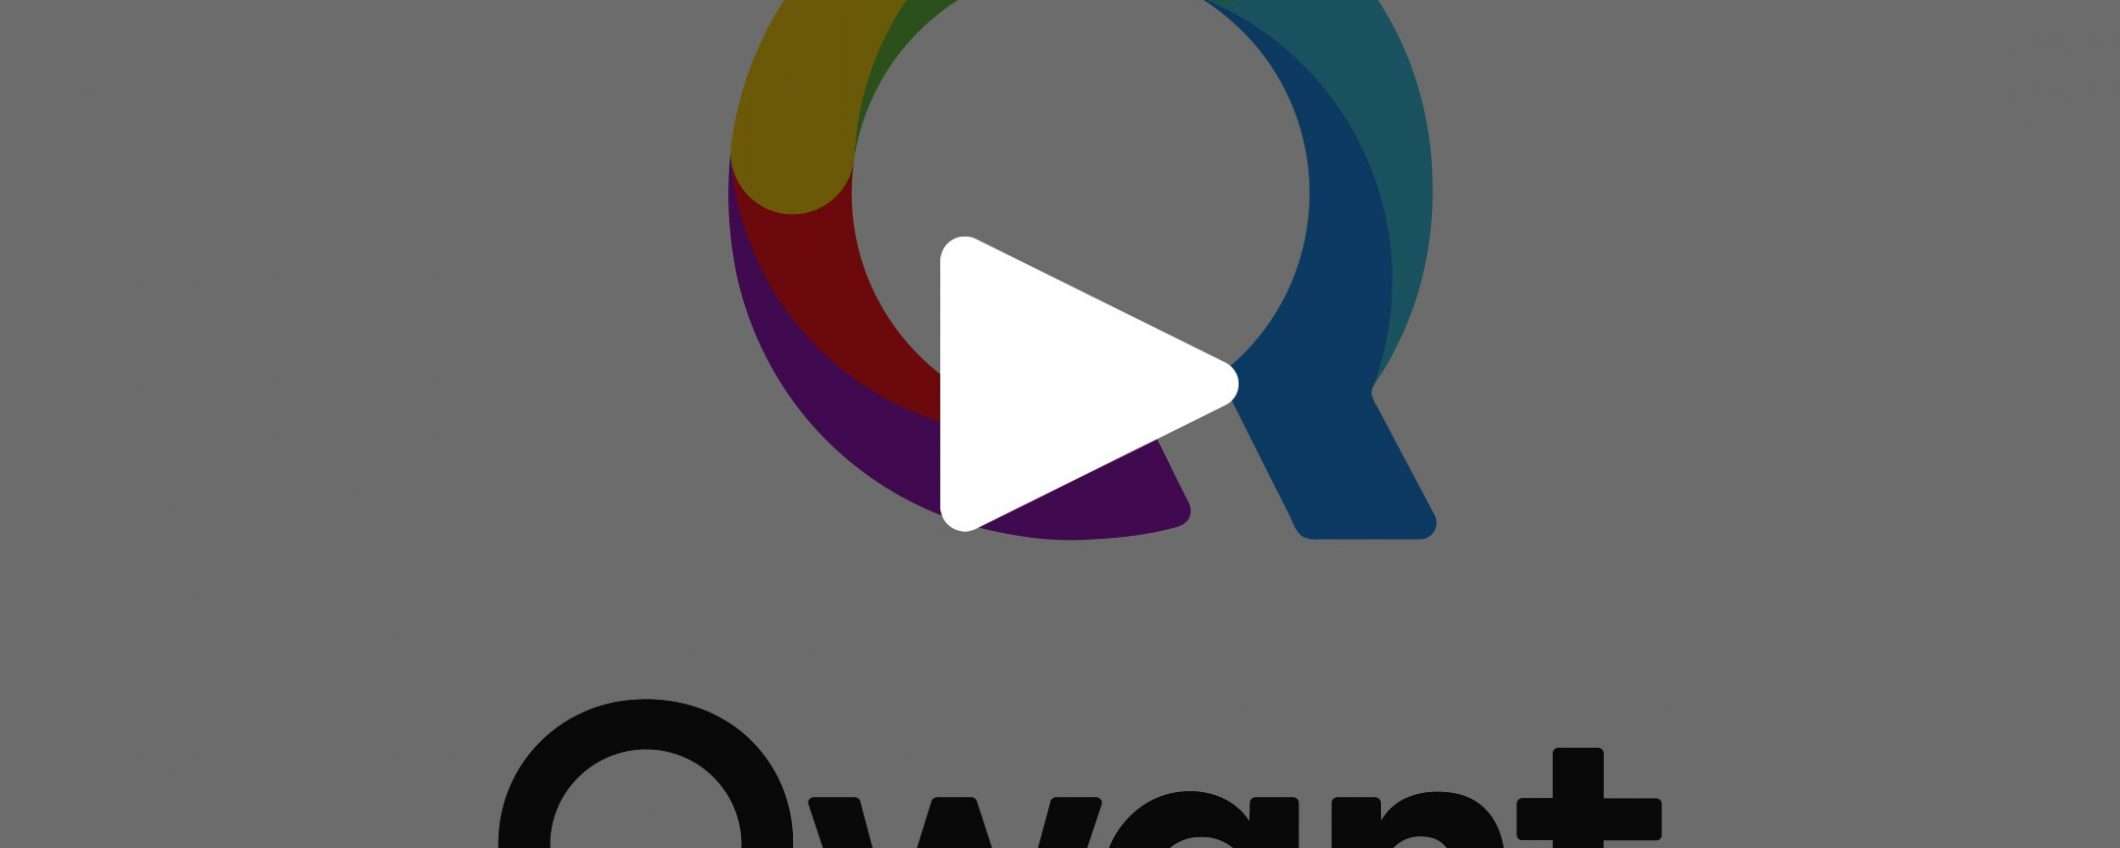 Qwant: novità in diretta streaming